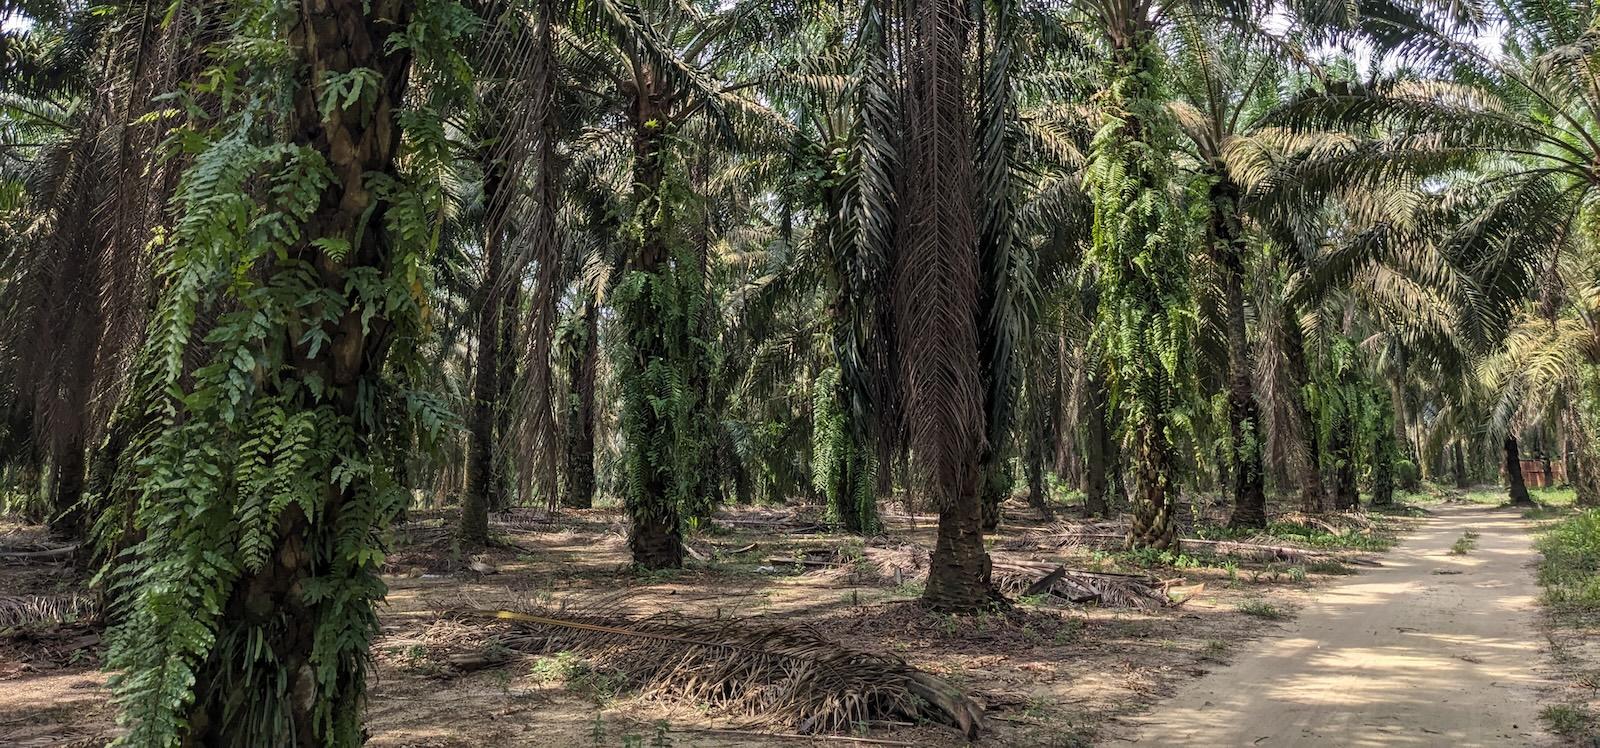 Trail through a palm plantation